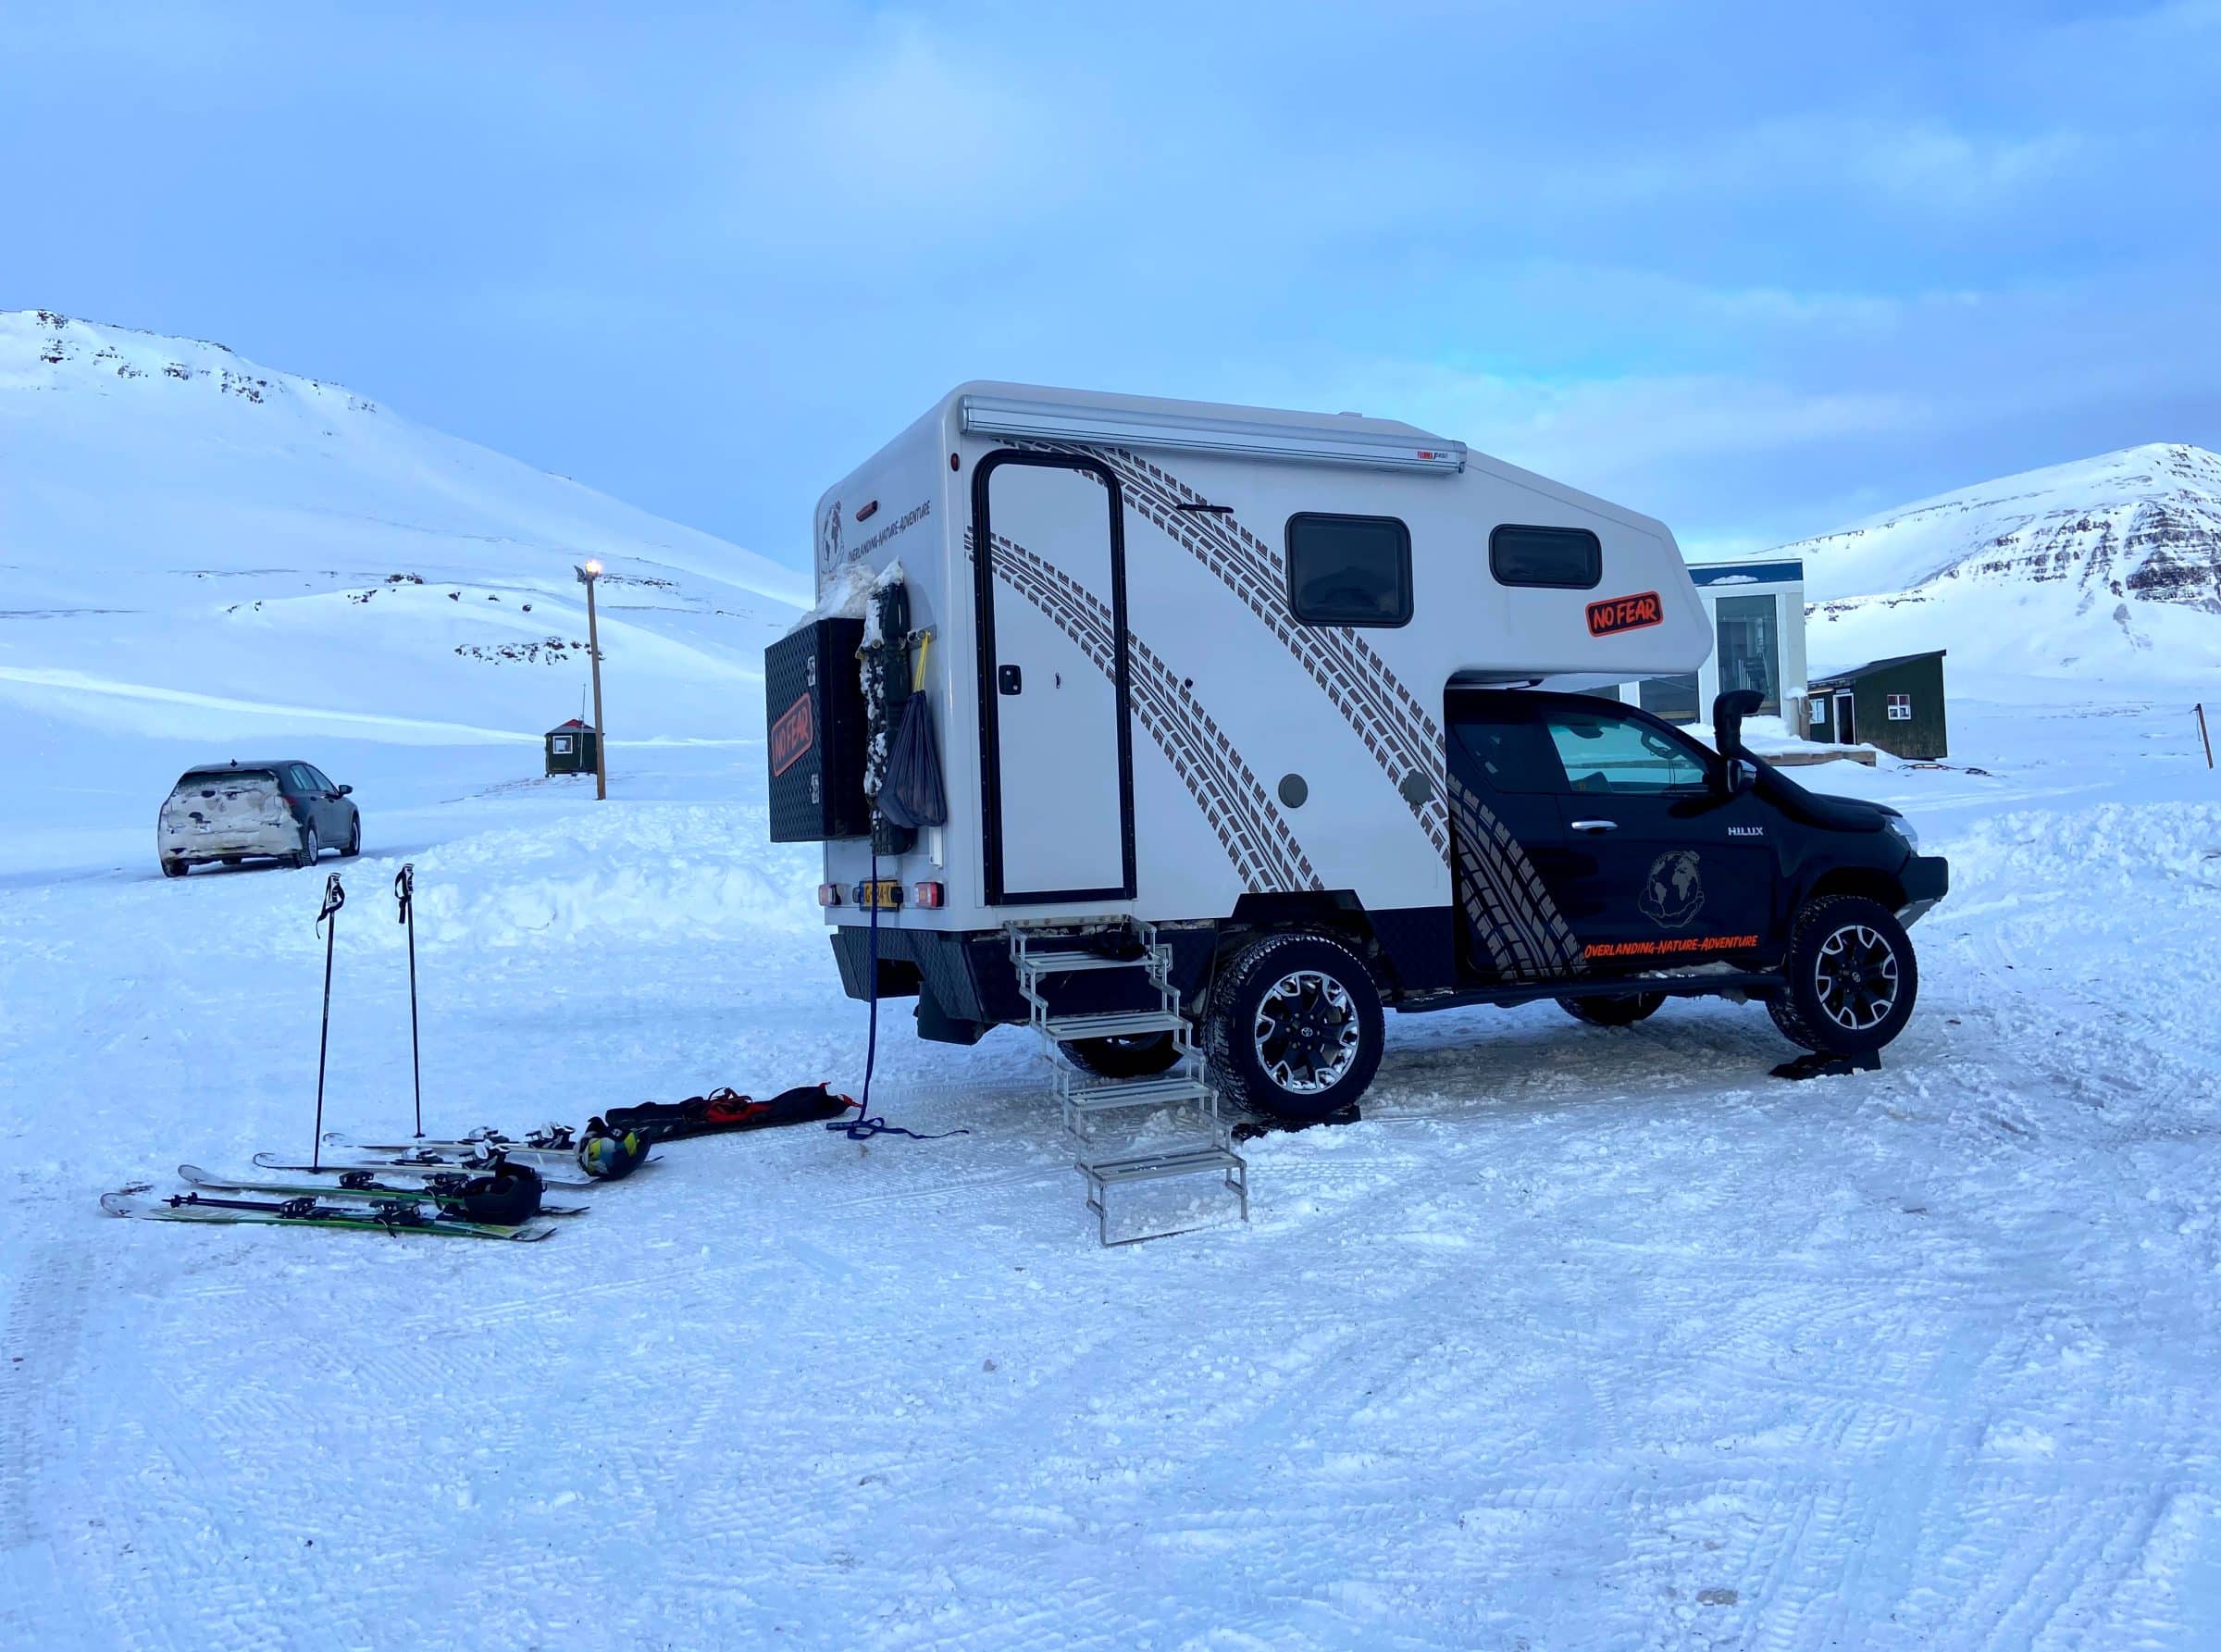 Onze ski-uitrusting en de 4x4 camper